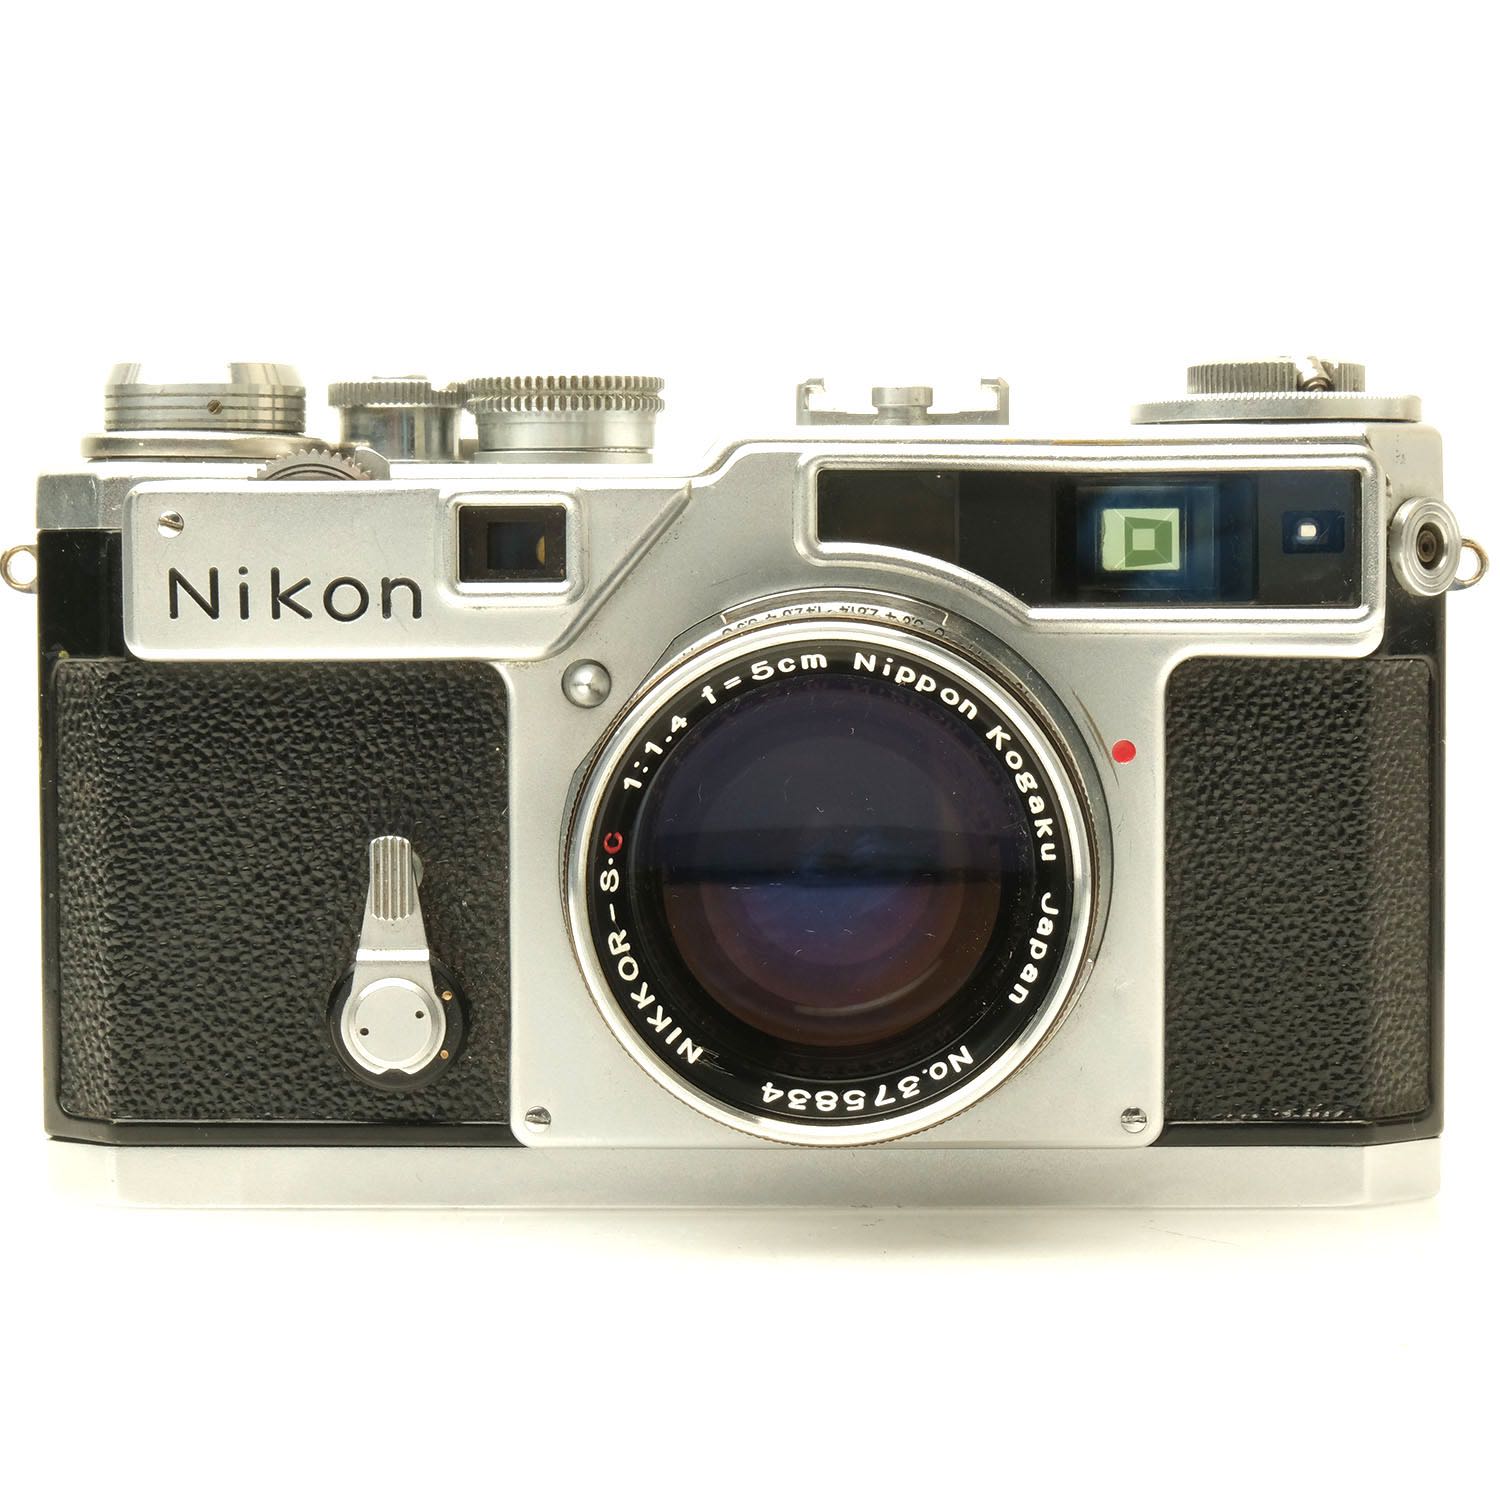 Nikon SP, 5cm f1.4 Nikkor-S.C 6213821